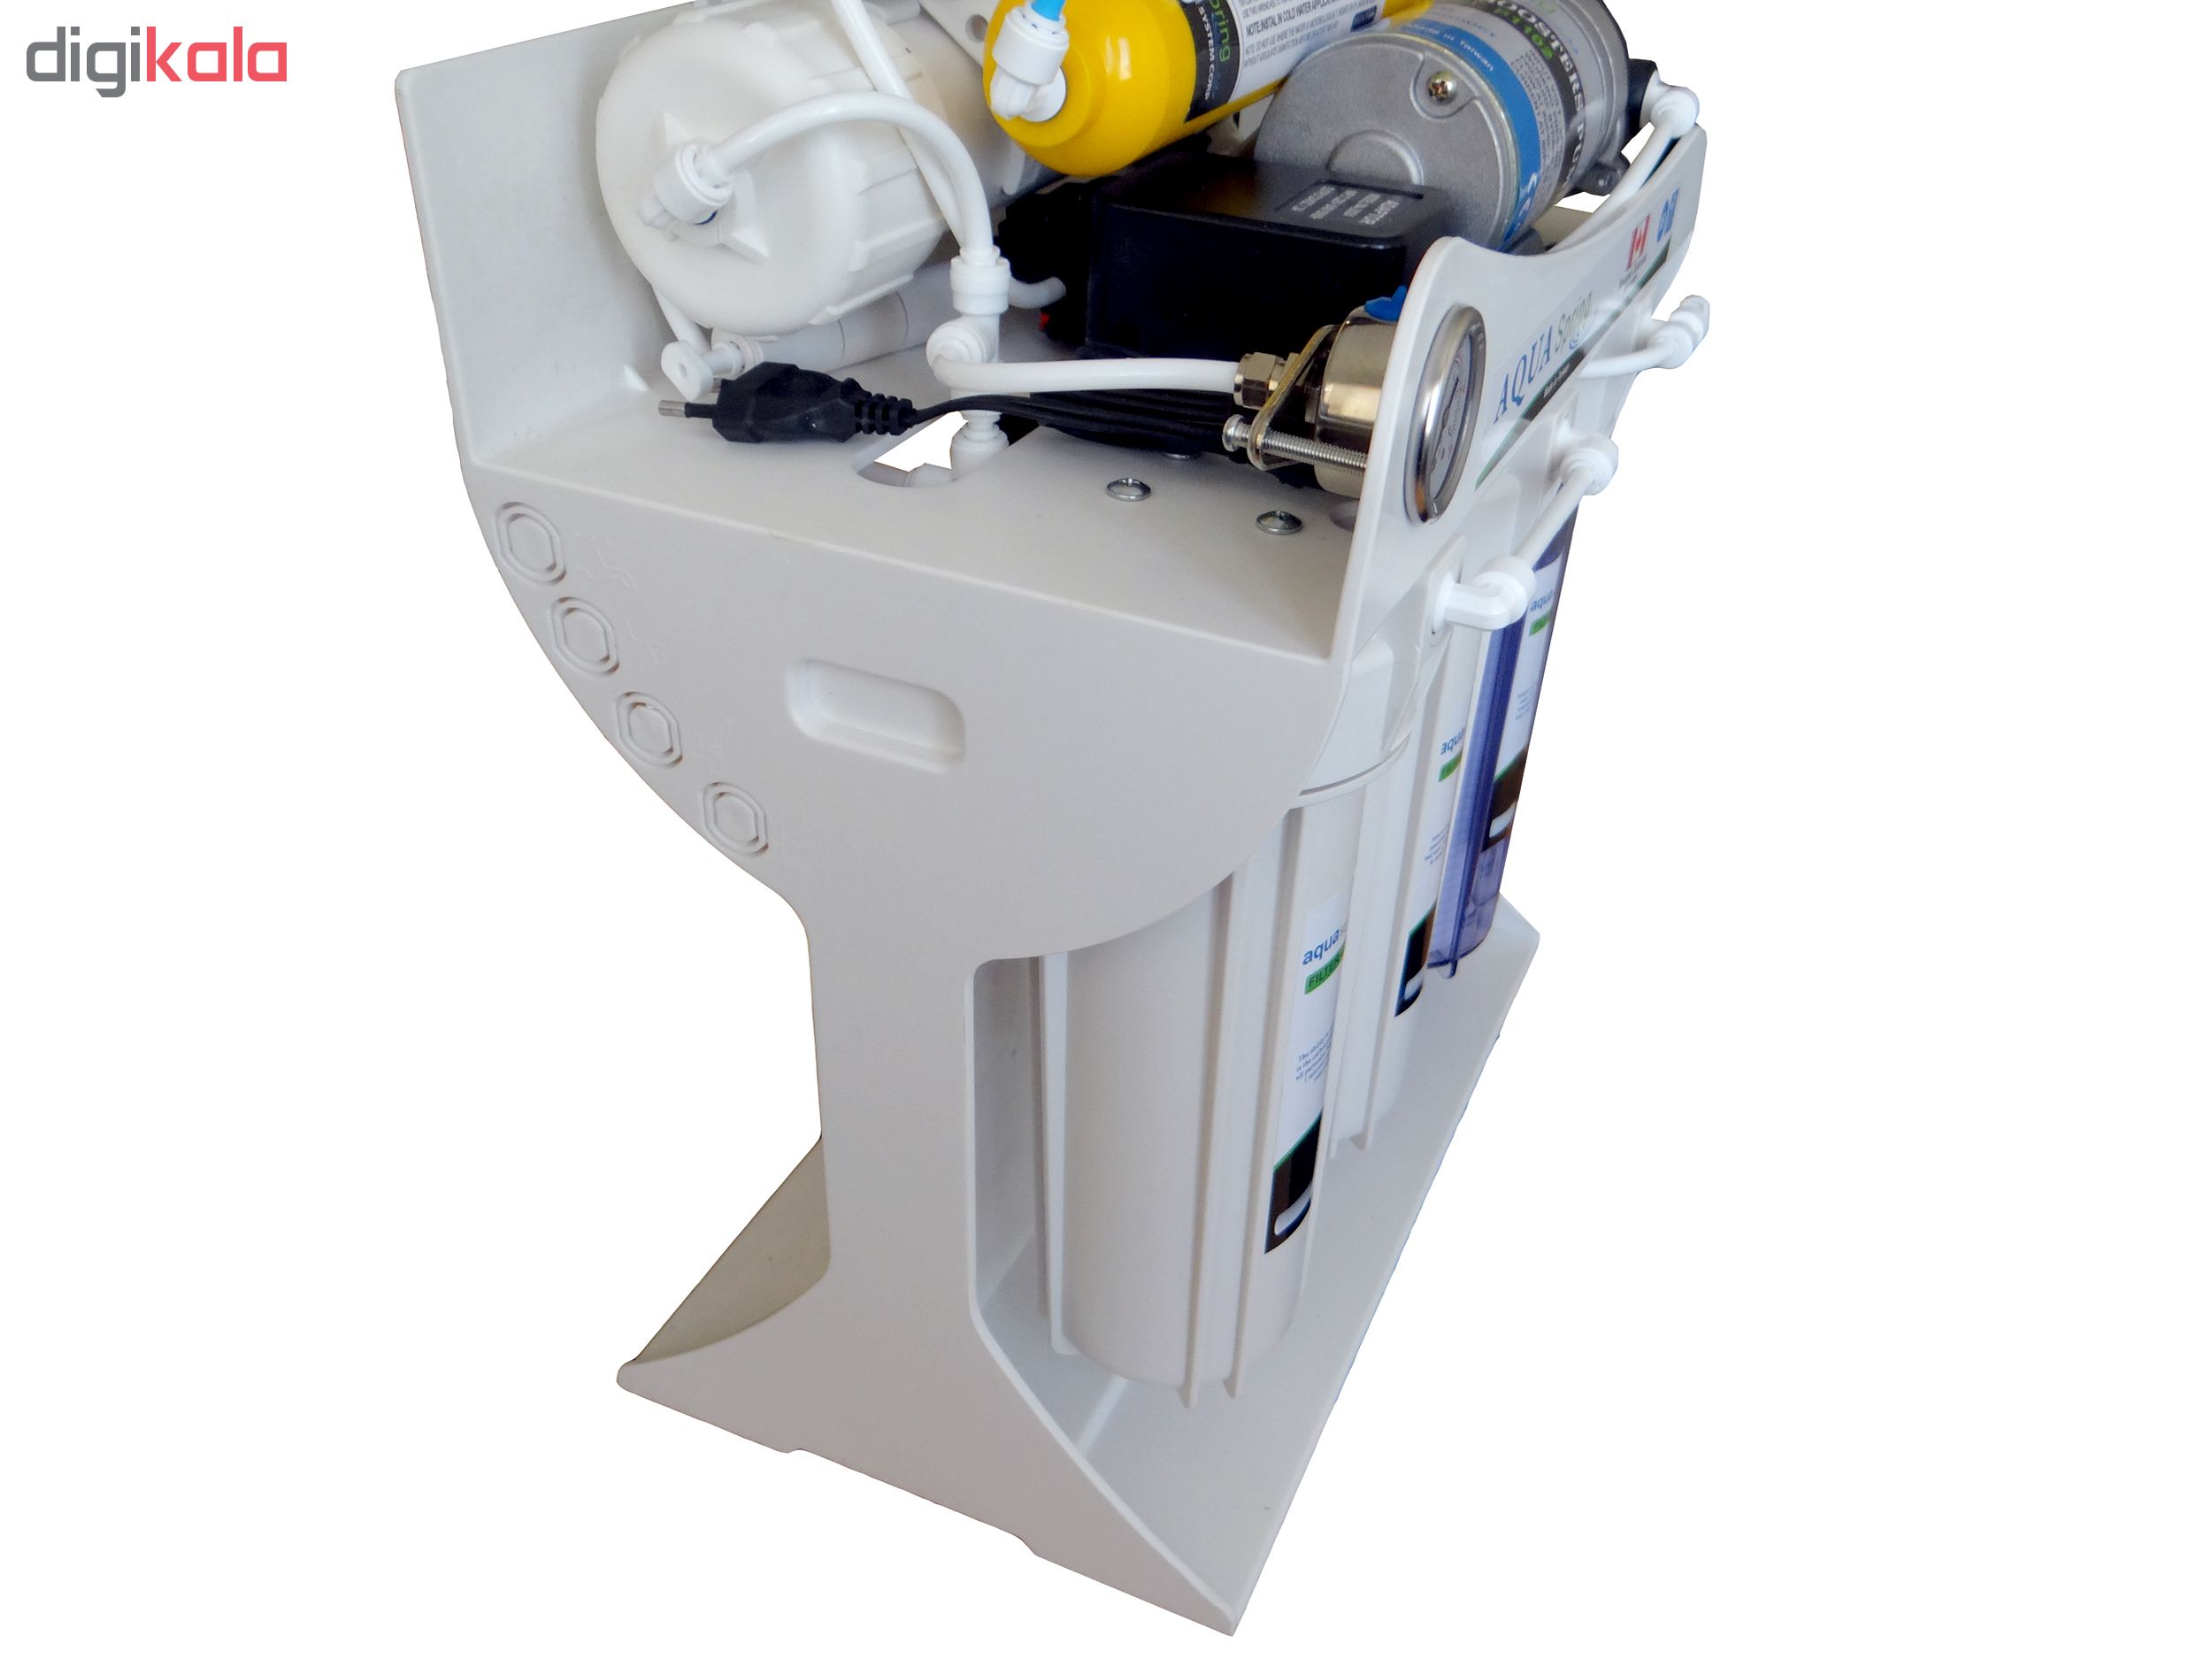 دستگاه تصفیه کننده آب آکوآ اسپرینگ مدل UF-SF4000 به همراه فیلتر دستگاه تصفیه کننده آب بسته 4 عددی